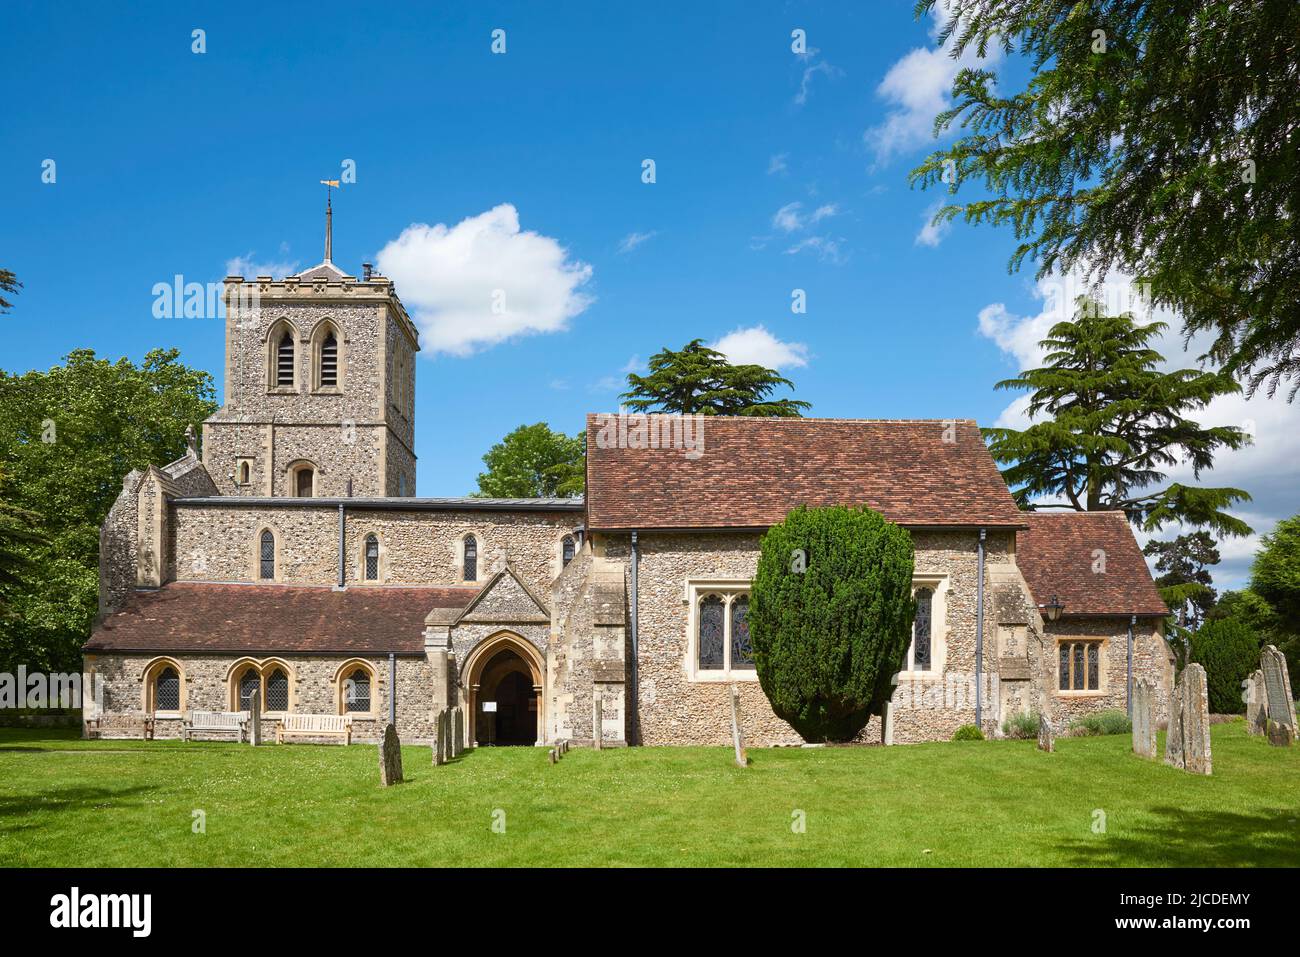 La histórica iglesia anglosajona de San Miguel en la ciudad de St Albans, Hertfordshire, Reino Unido Foto de stock